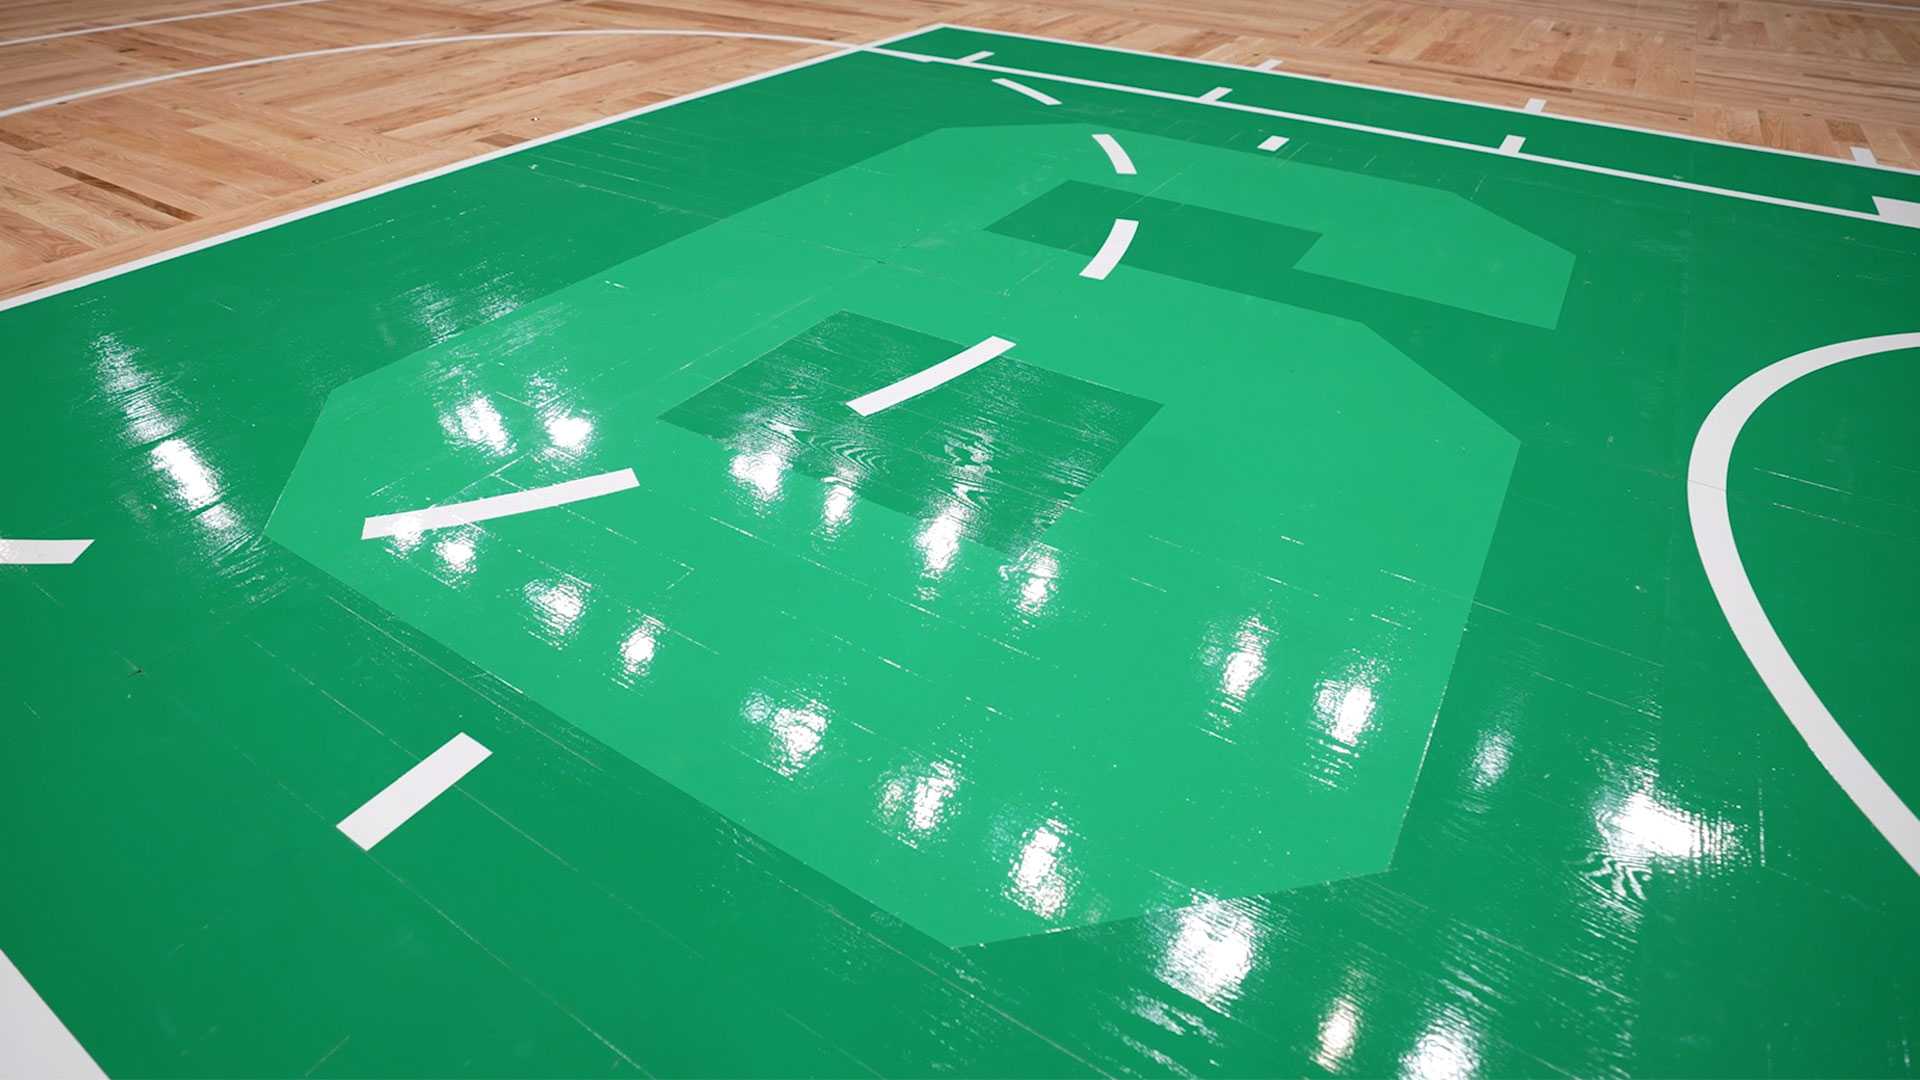 Celtics eagerly anticipate full house at TD Garden for Game 4 - The Boston  Globe